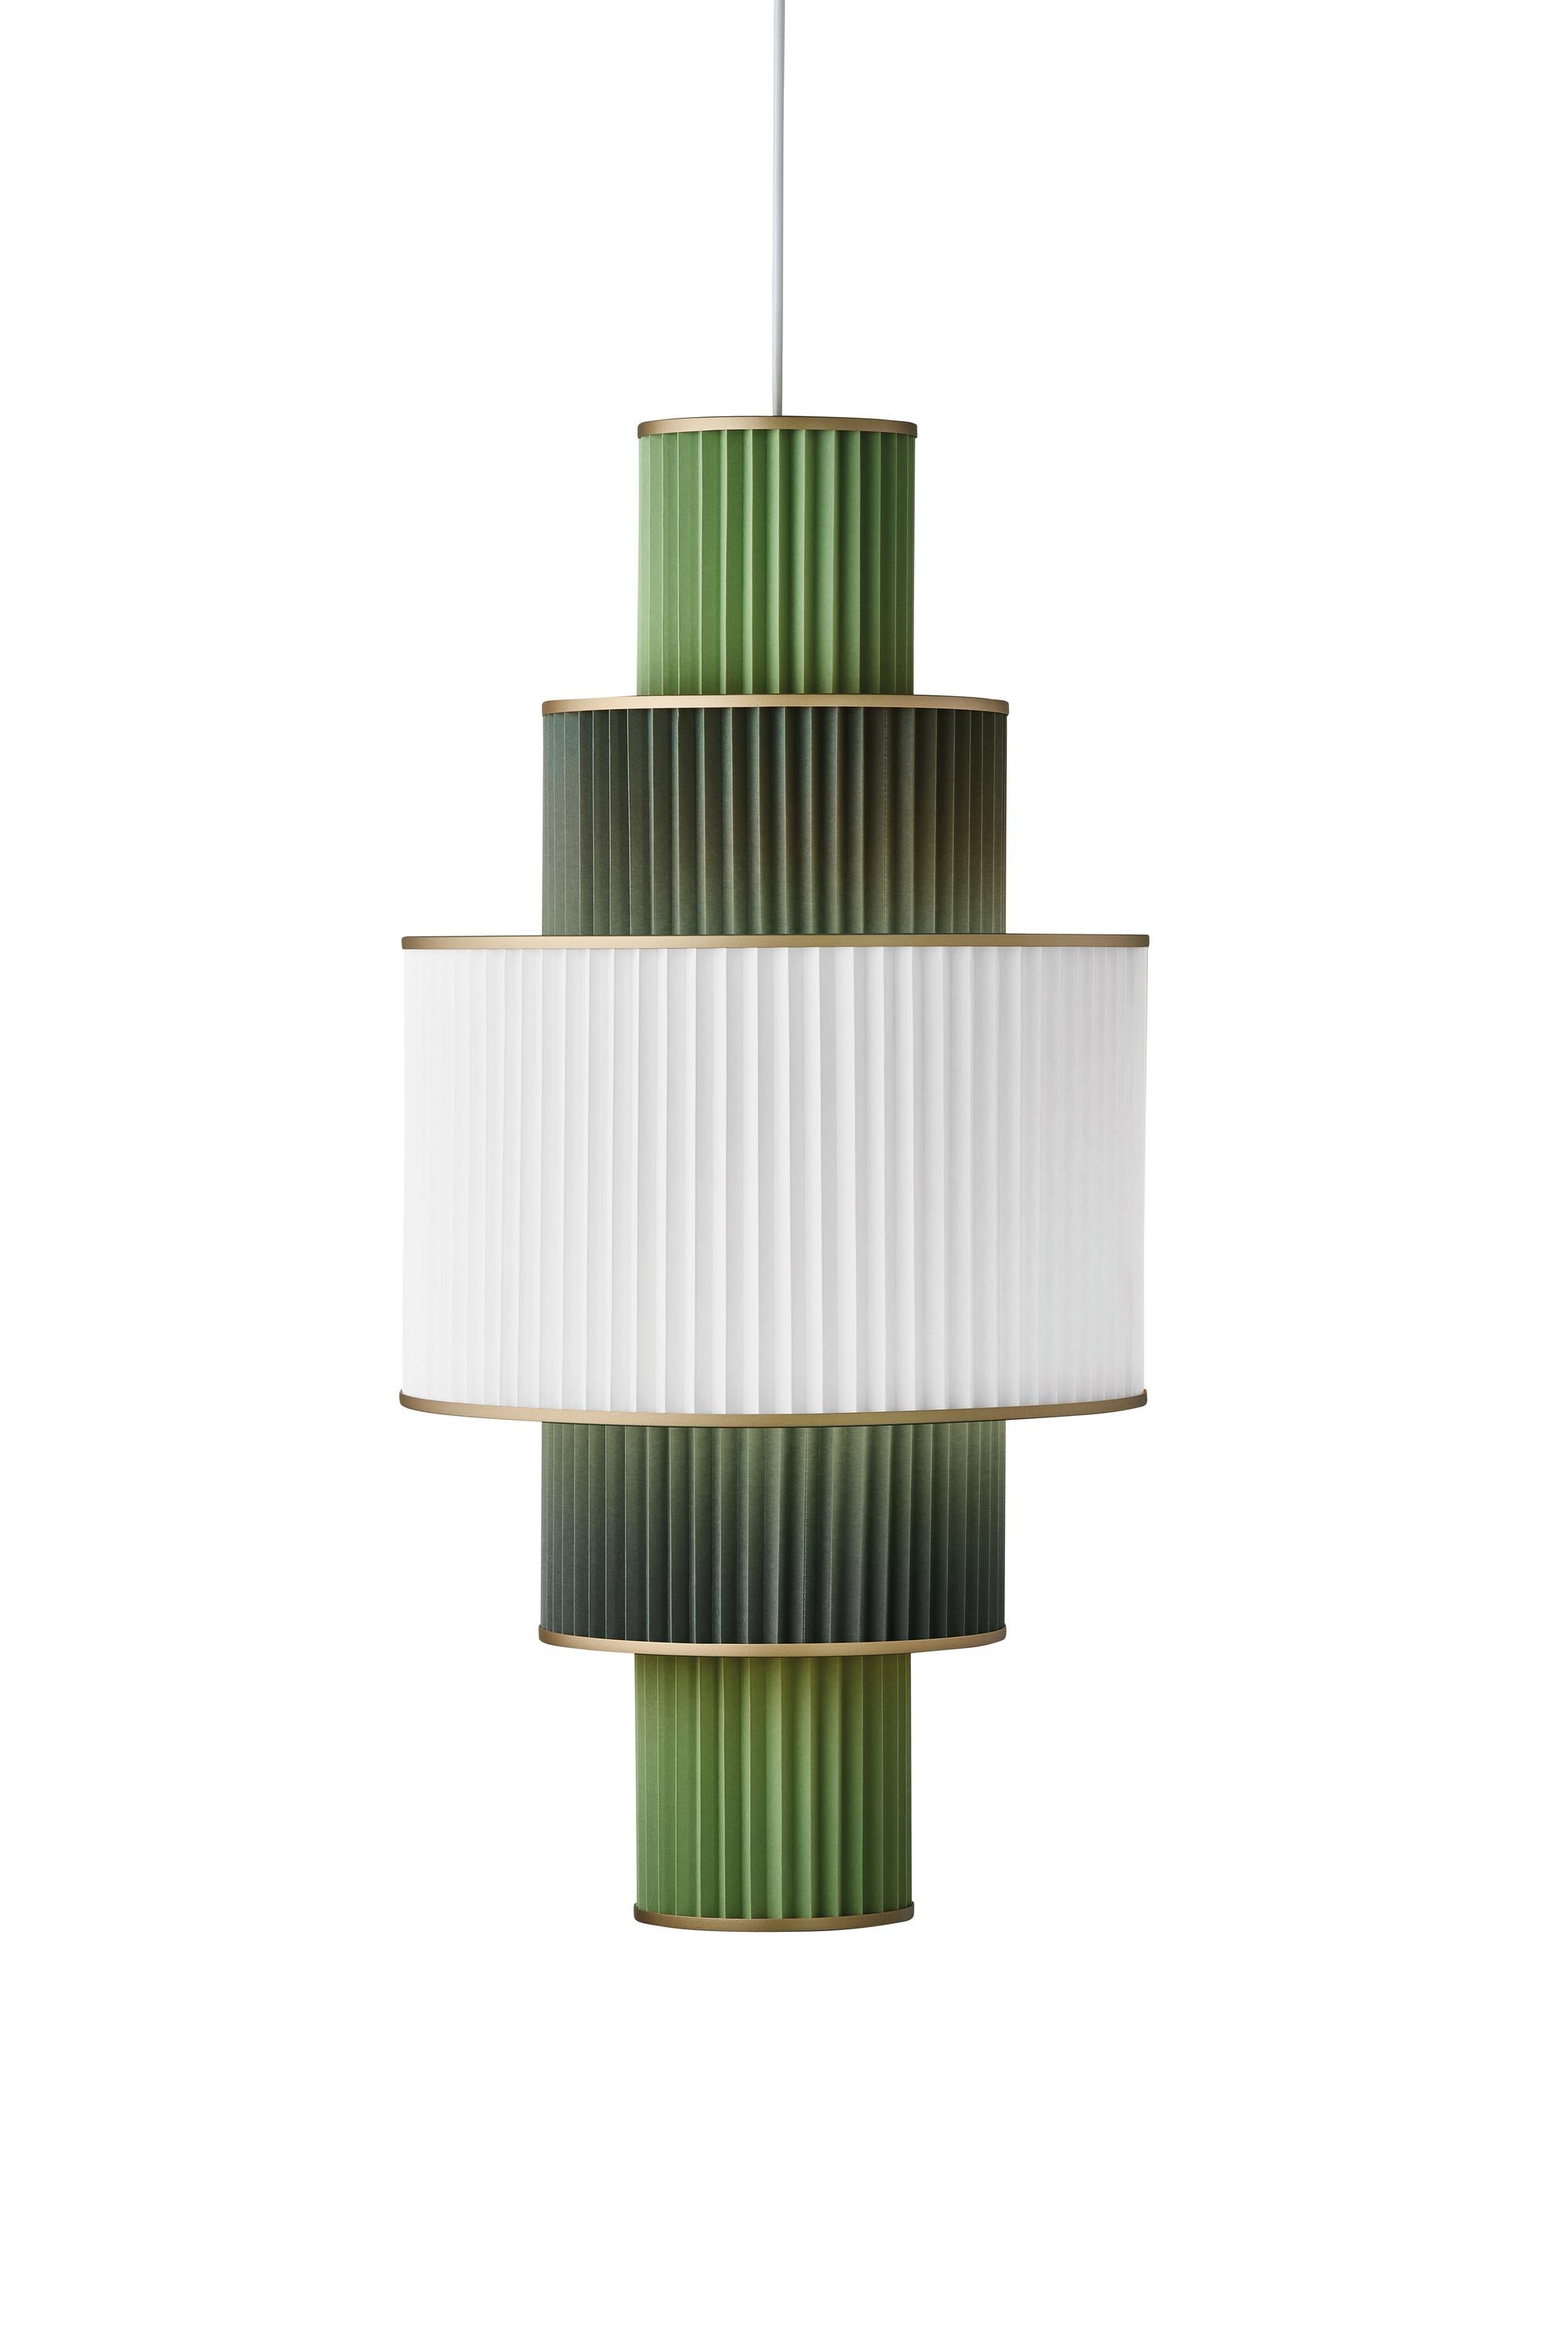 Le Klint Plivello Suspension Lamp Gouden/Wit/lichtgroen met 5 tinten (S M L M S)